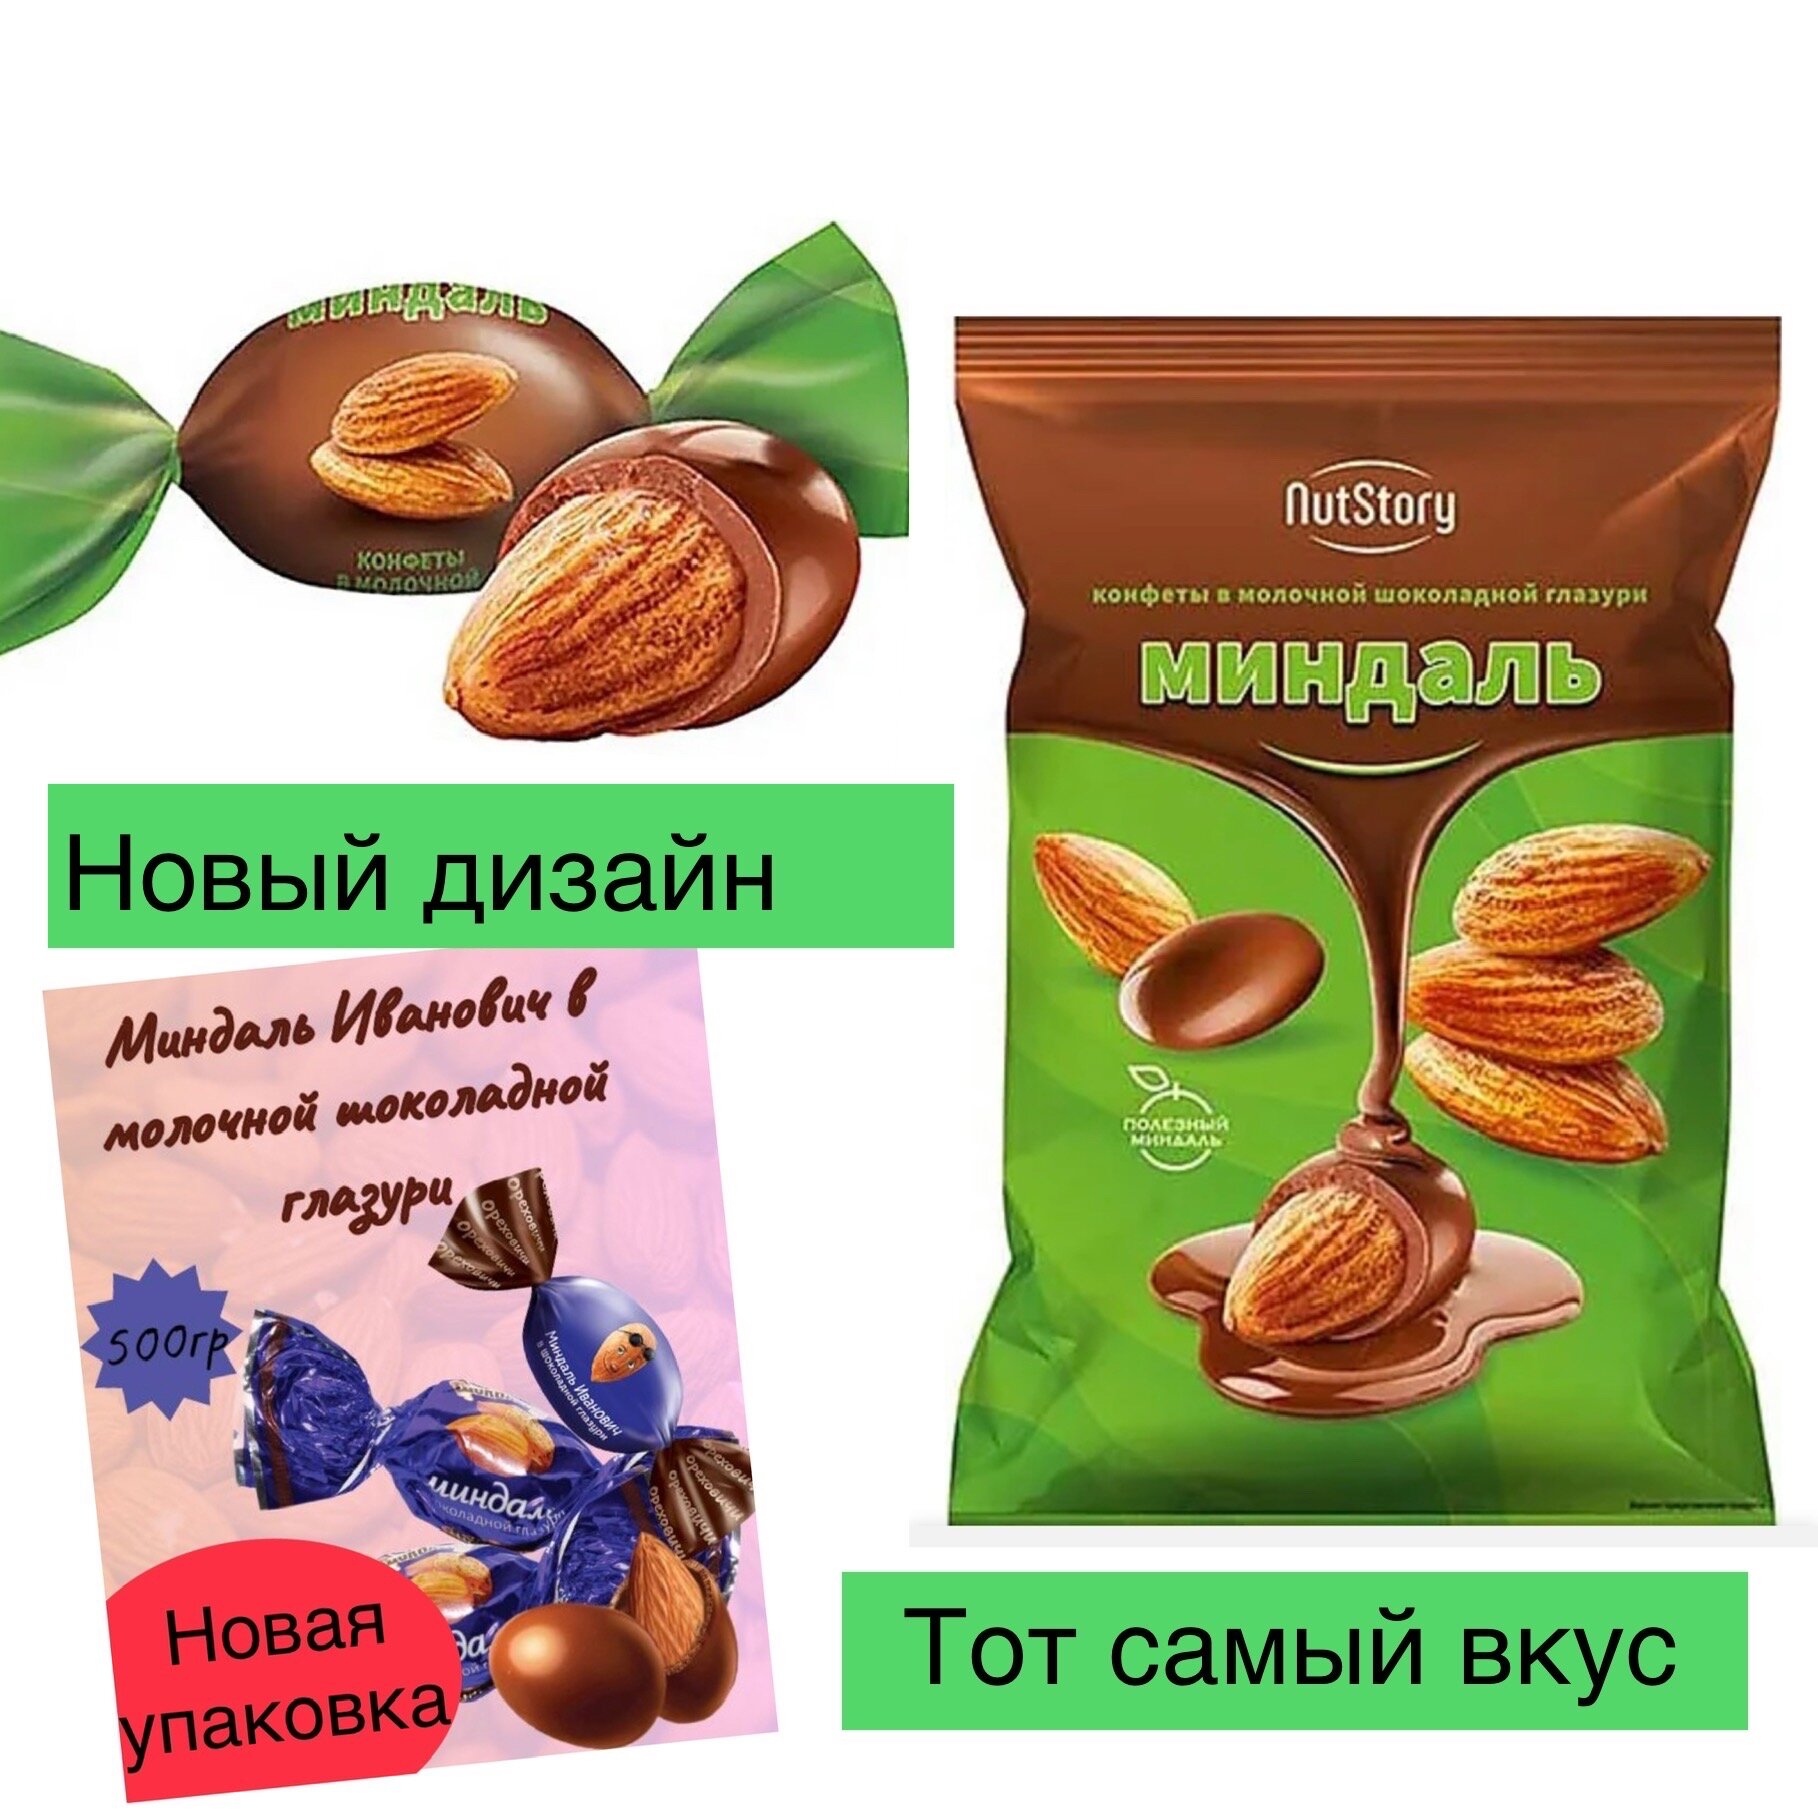 Конфеты Ореховичи Миндаль Иванович в шоколадной глазури, 500 г, флоу-пак